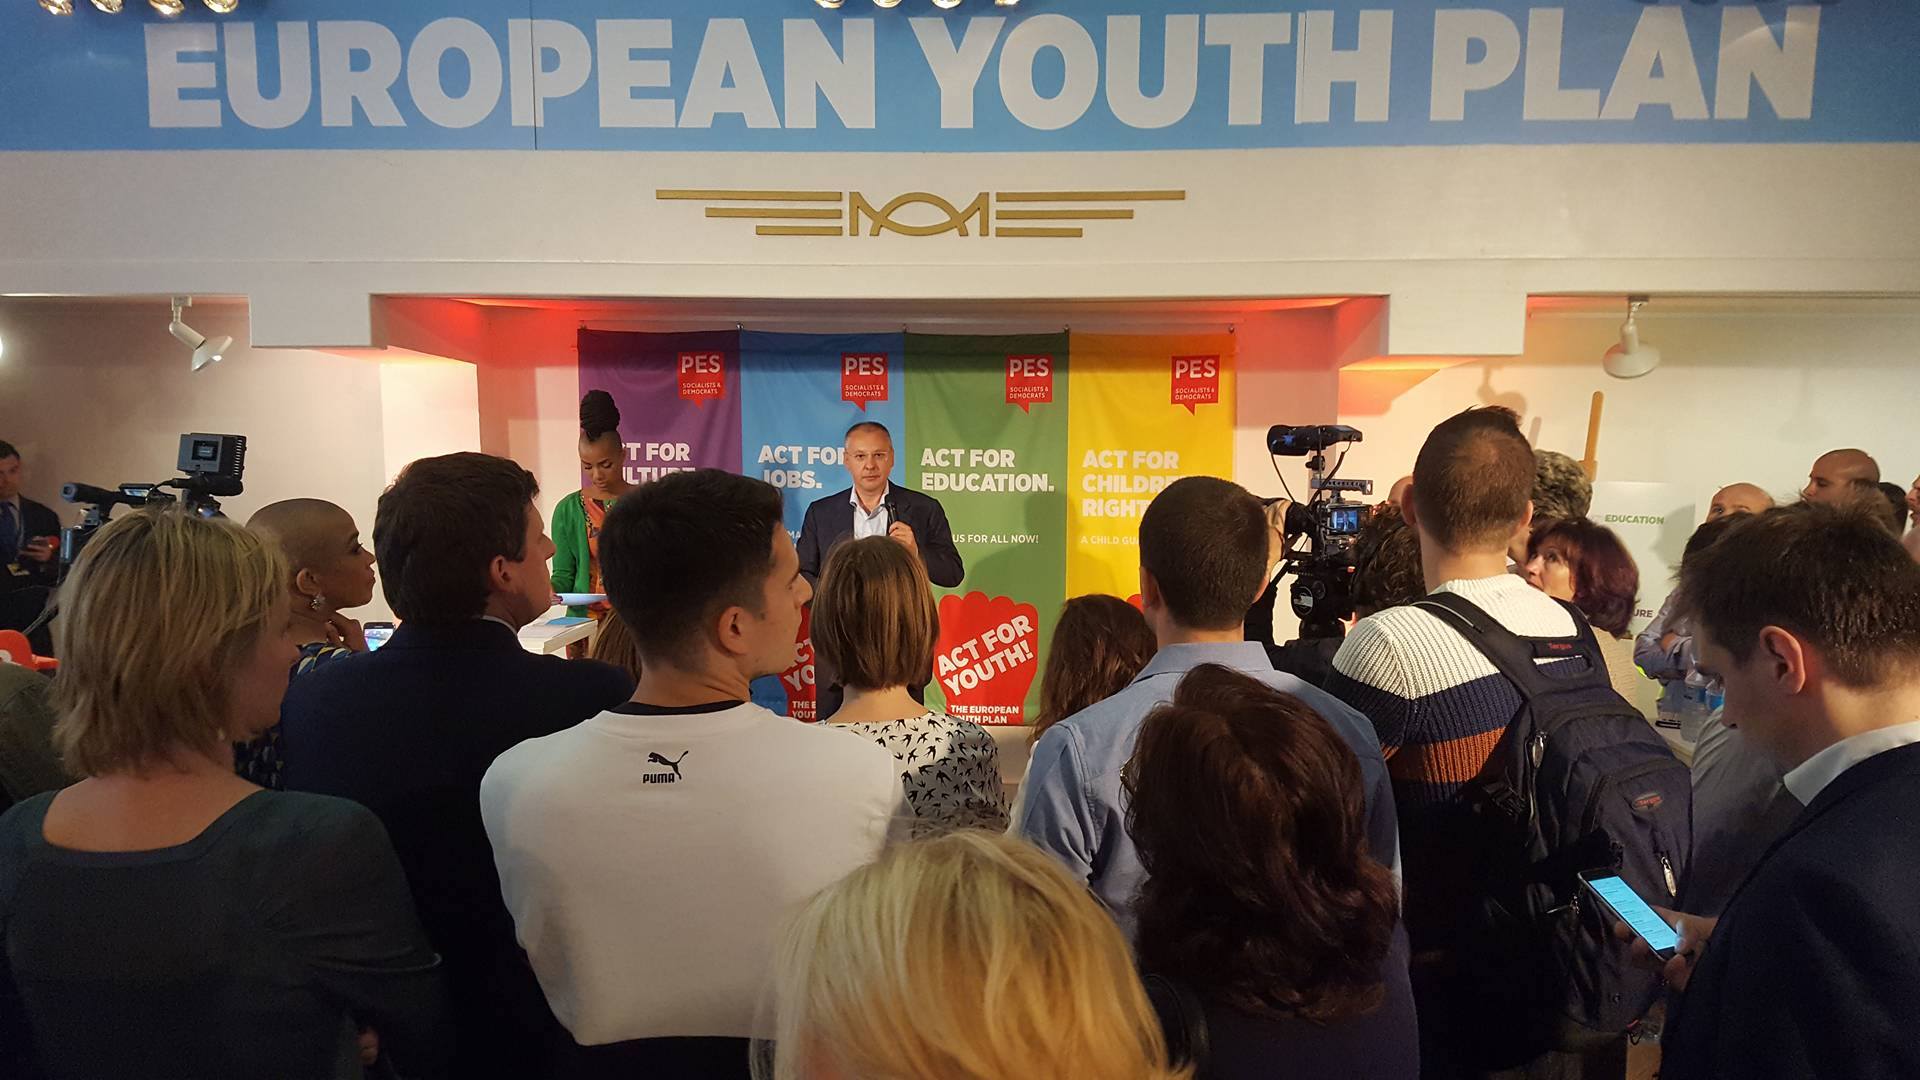 Az ifjúságot segítő akciótervet mutattak be az európai szocialisták